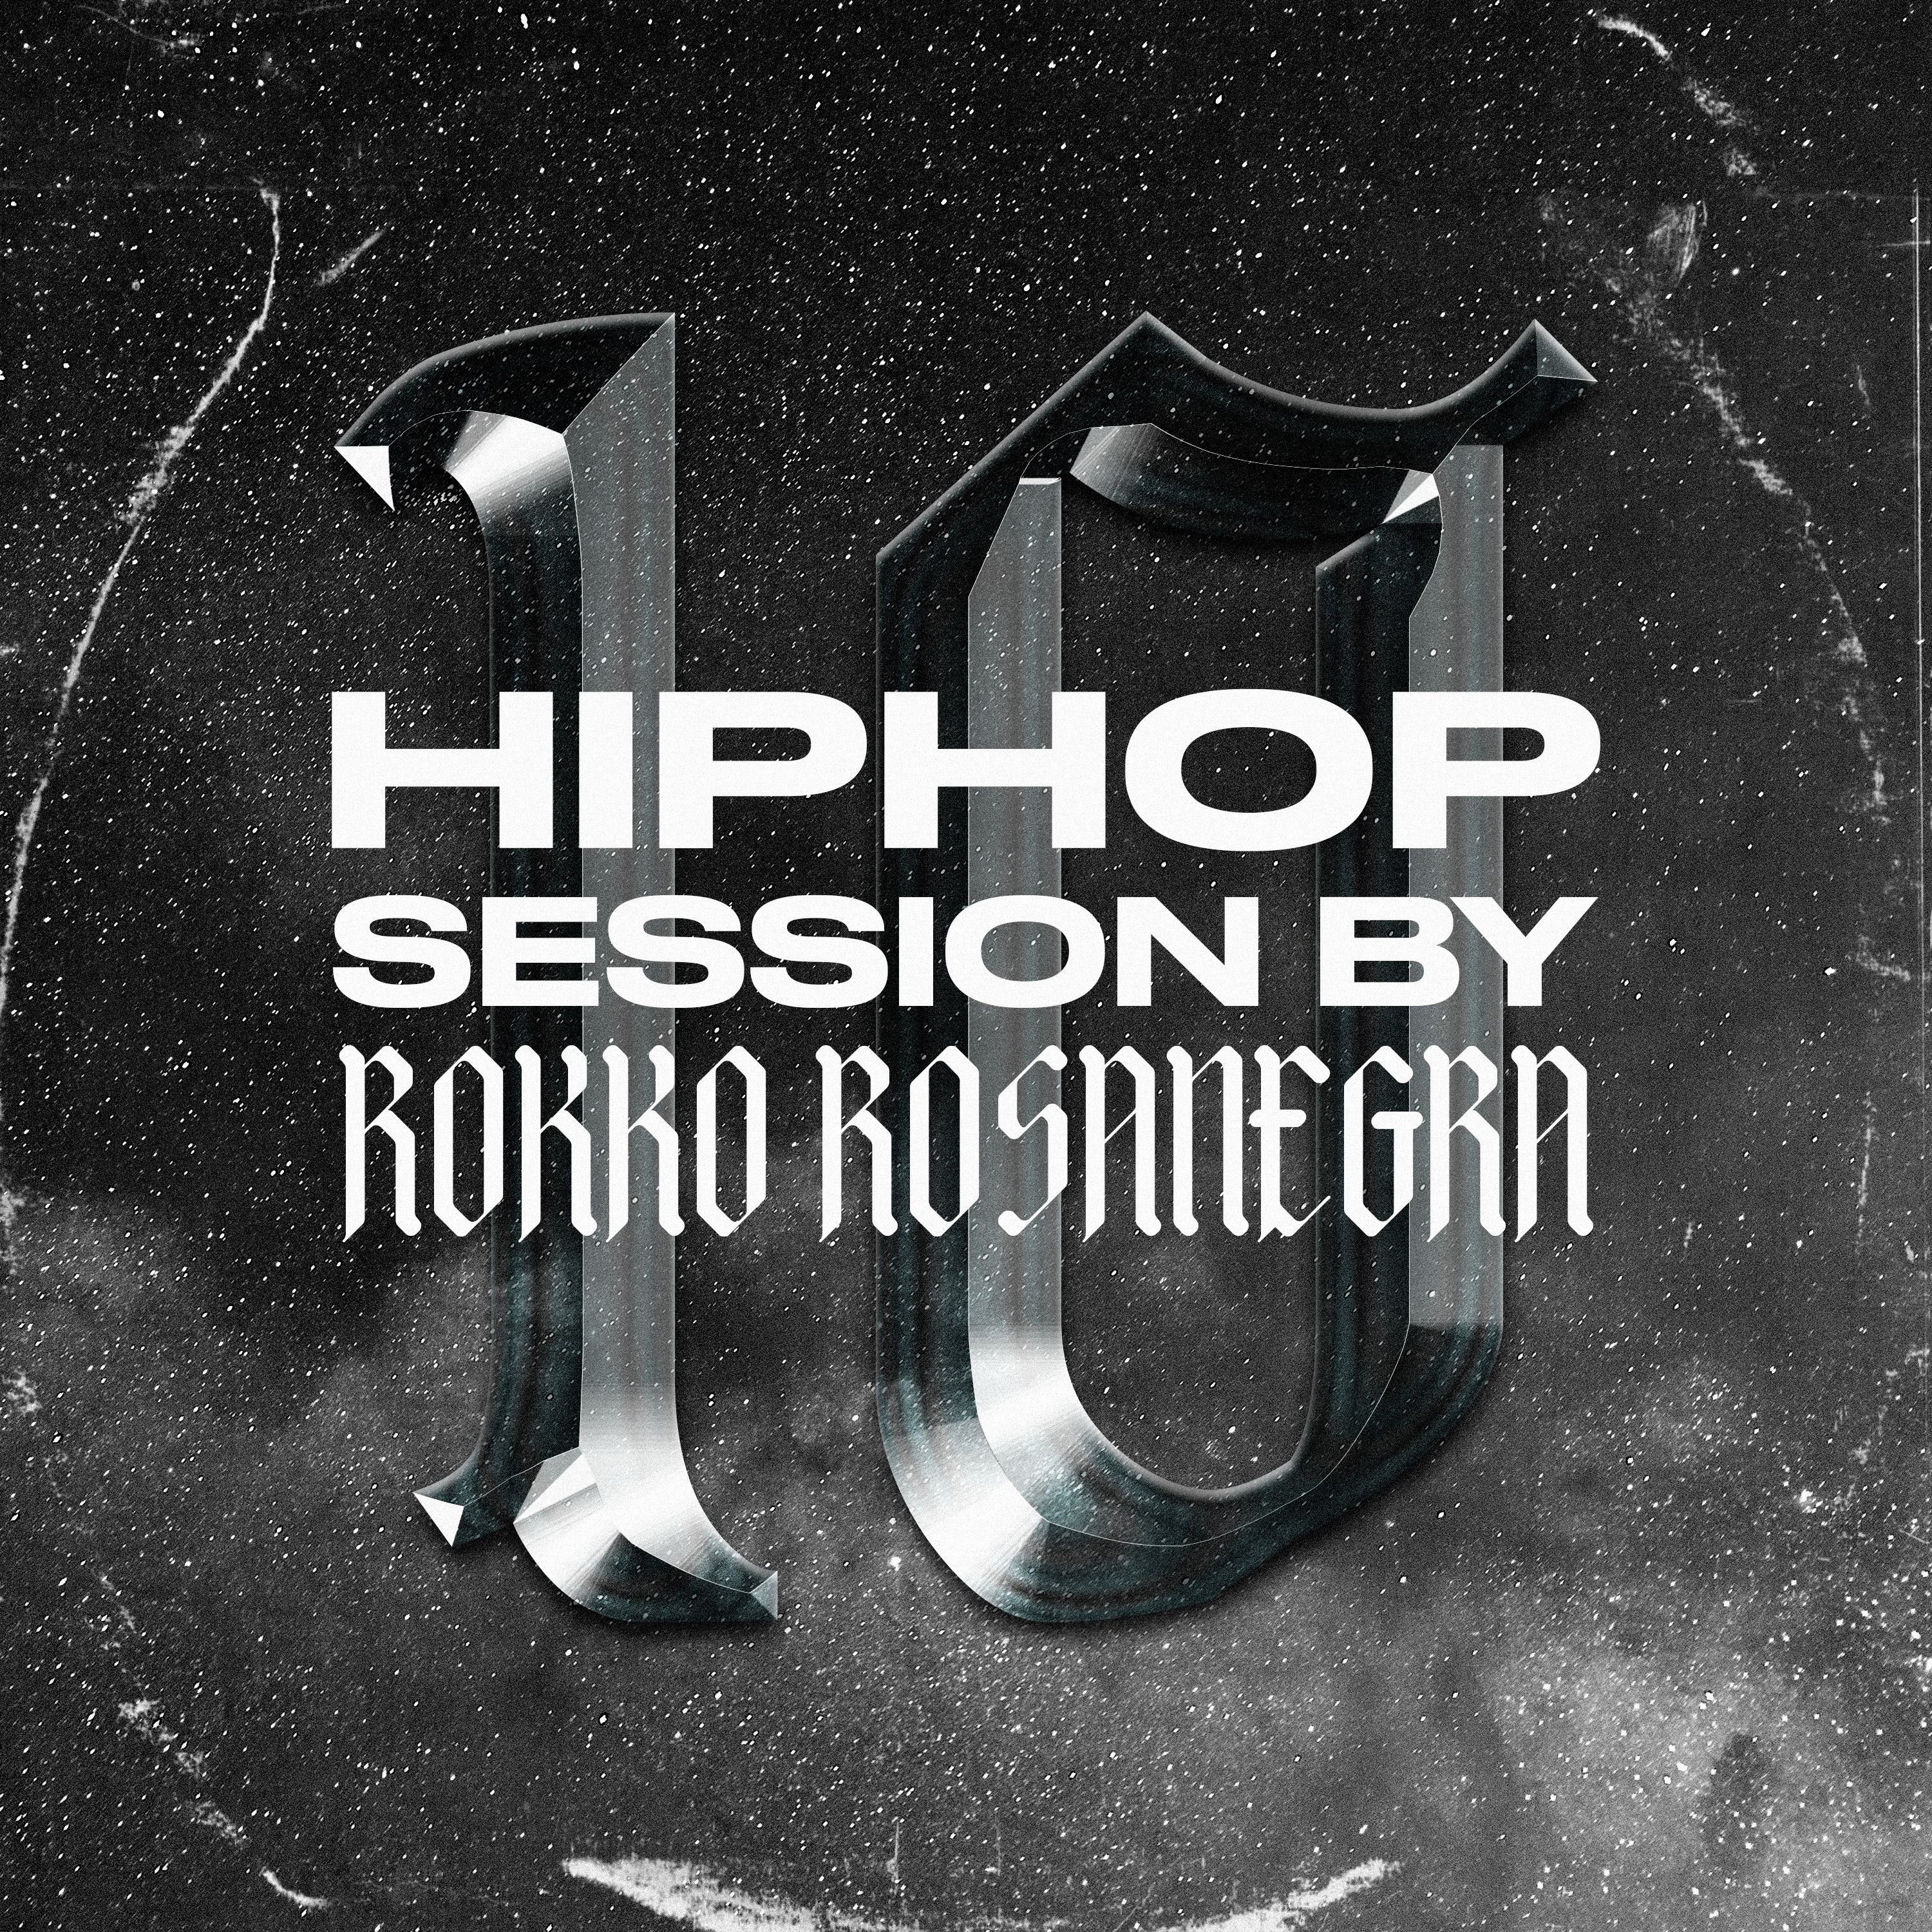 Lae alla HIP HOP SESSION 10 (DJ ROKKO ROSANEGRA)